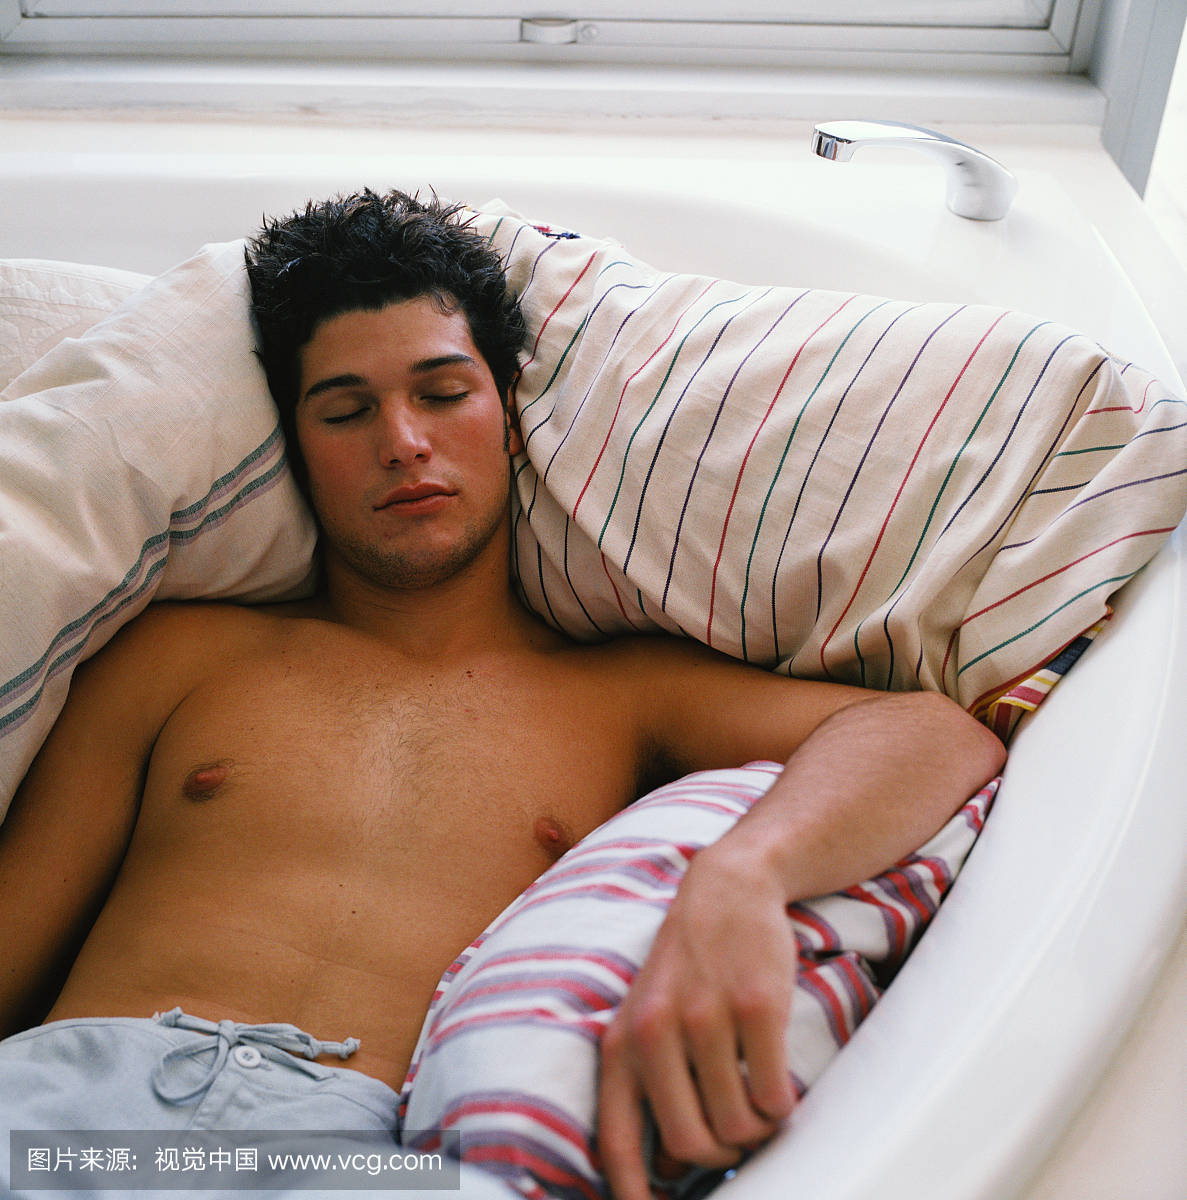 一个年轻人高高的看法,睡在一个浴缸中的羽绒